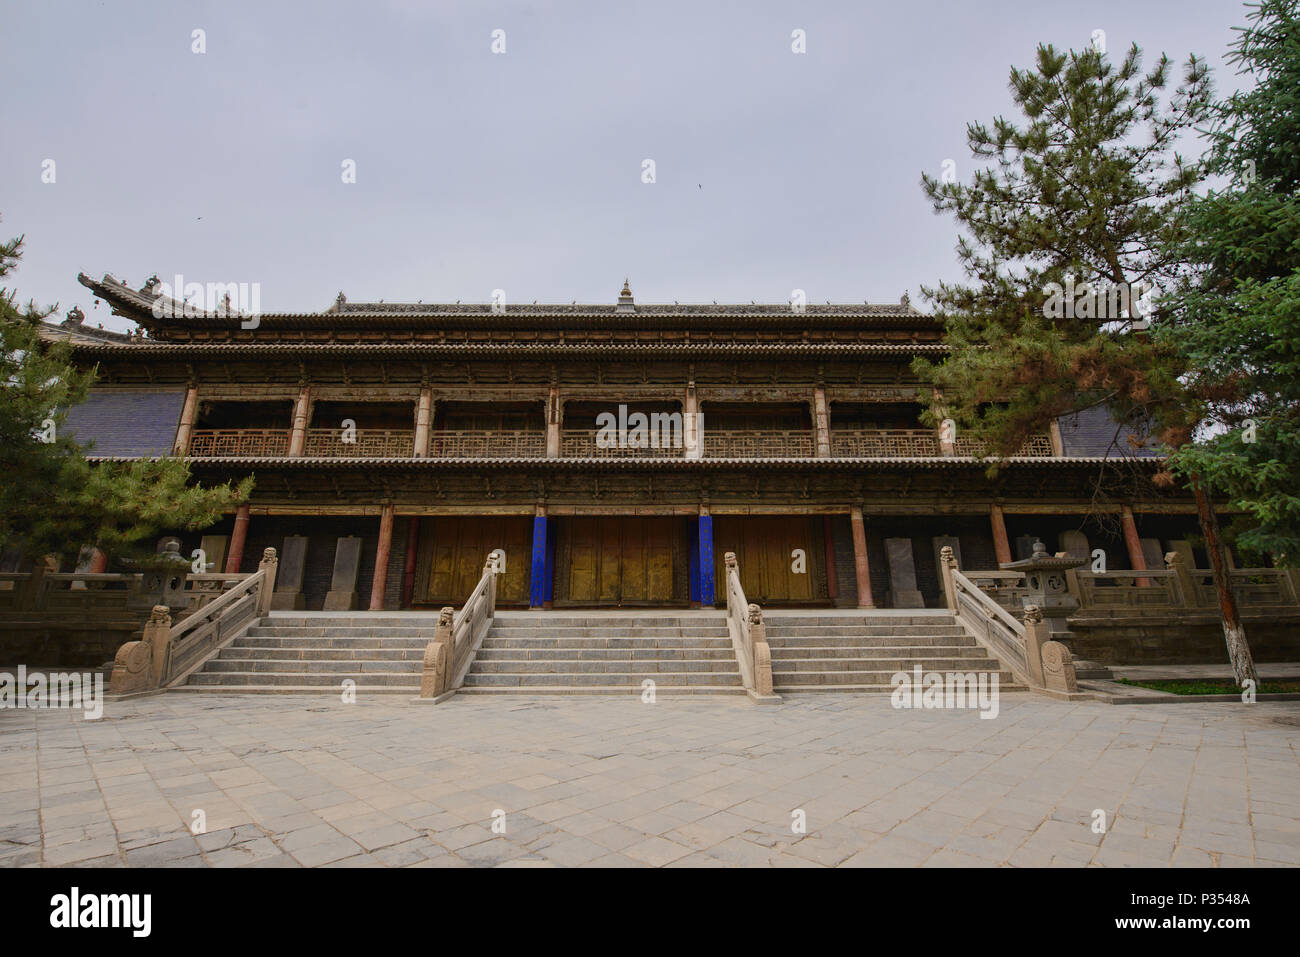 Ingresso al tempio Dafo (Grande Tempio del Buddha), risalente al 1100, Zhangye, Gansu, Cina Foto Stock